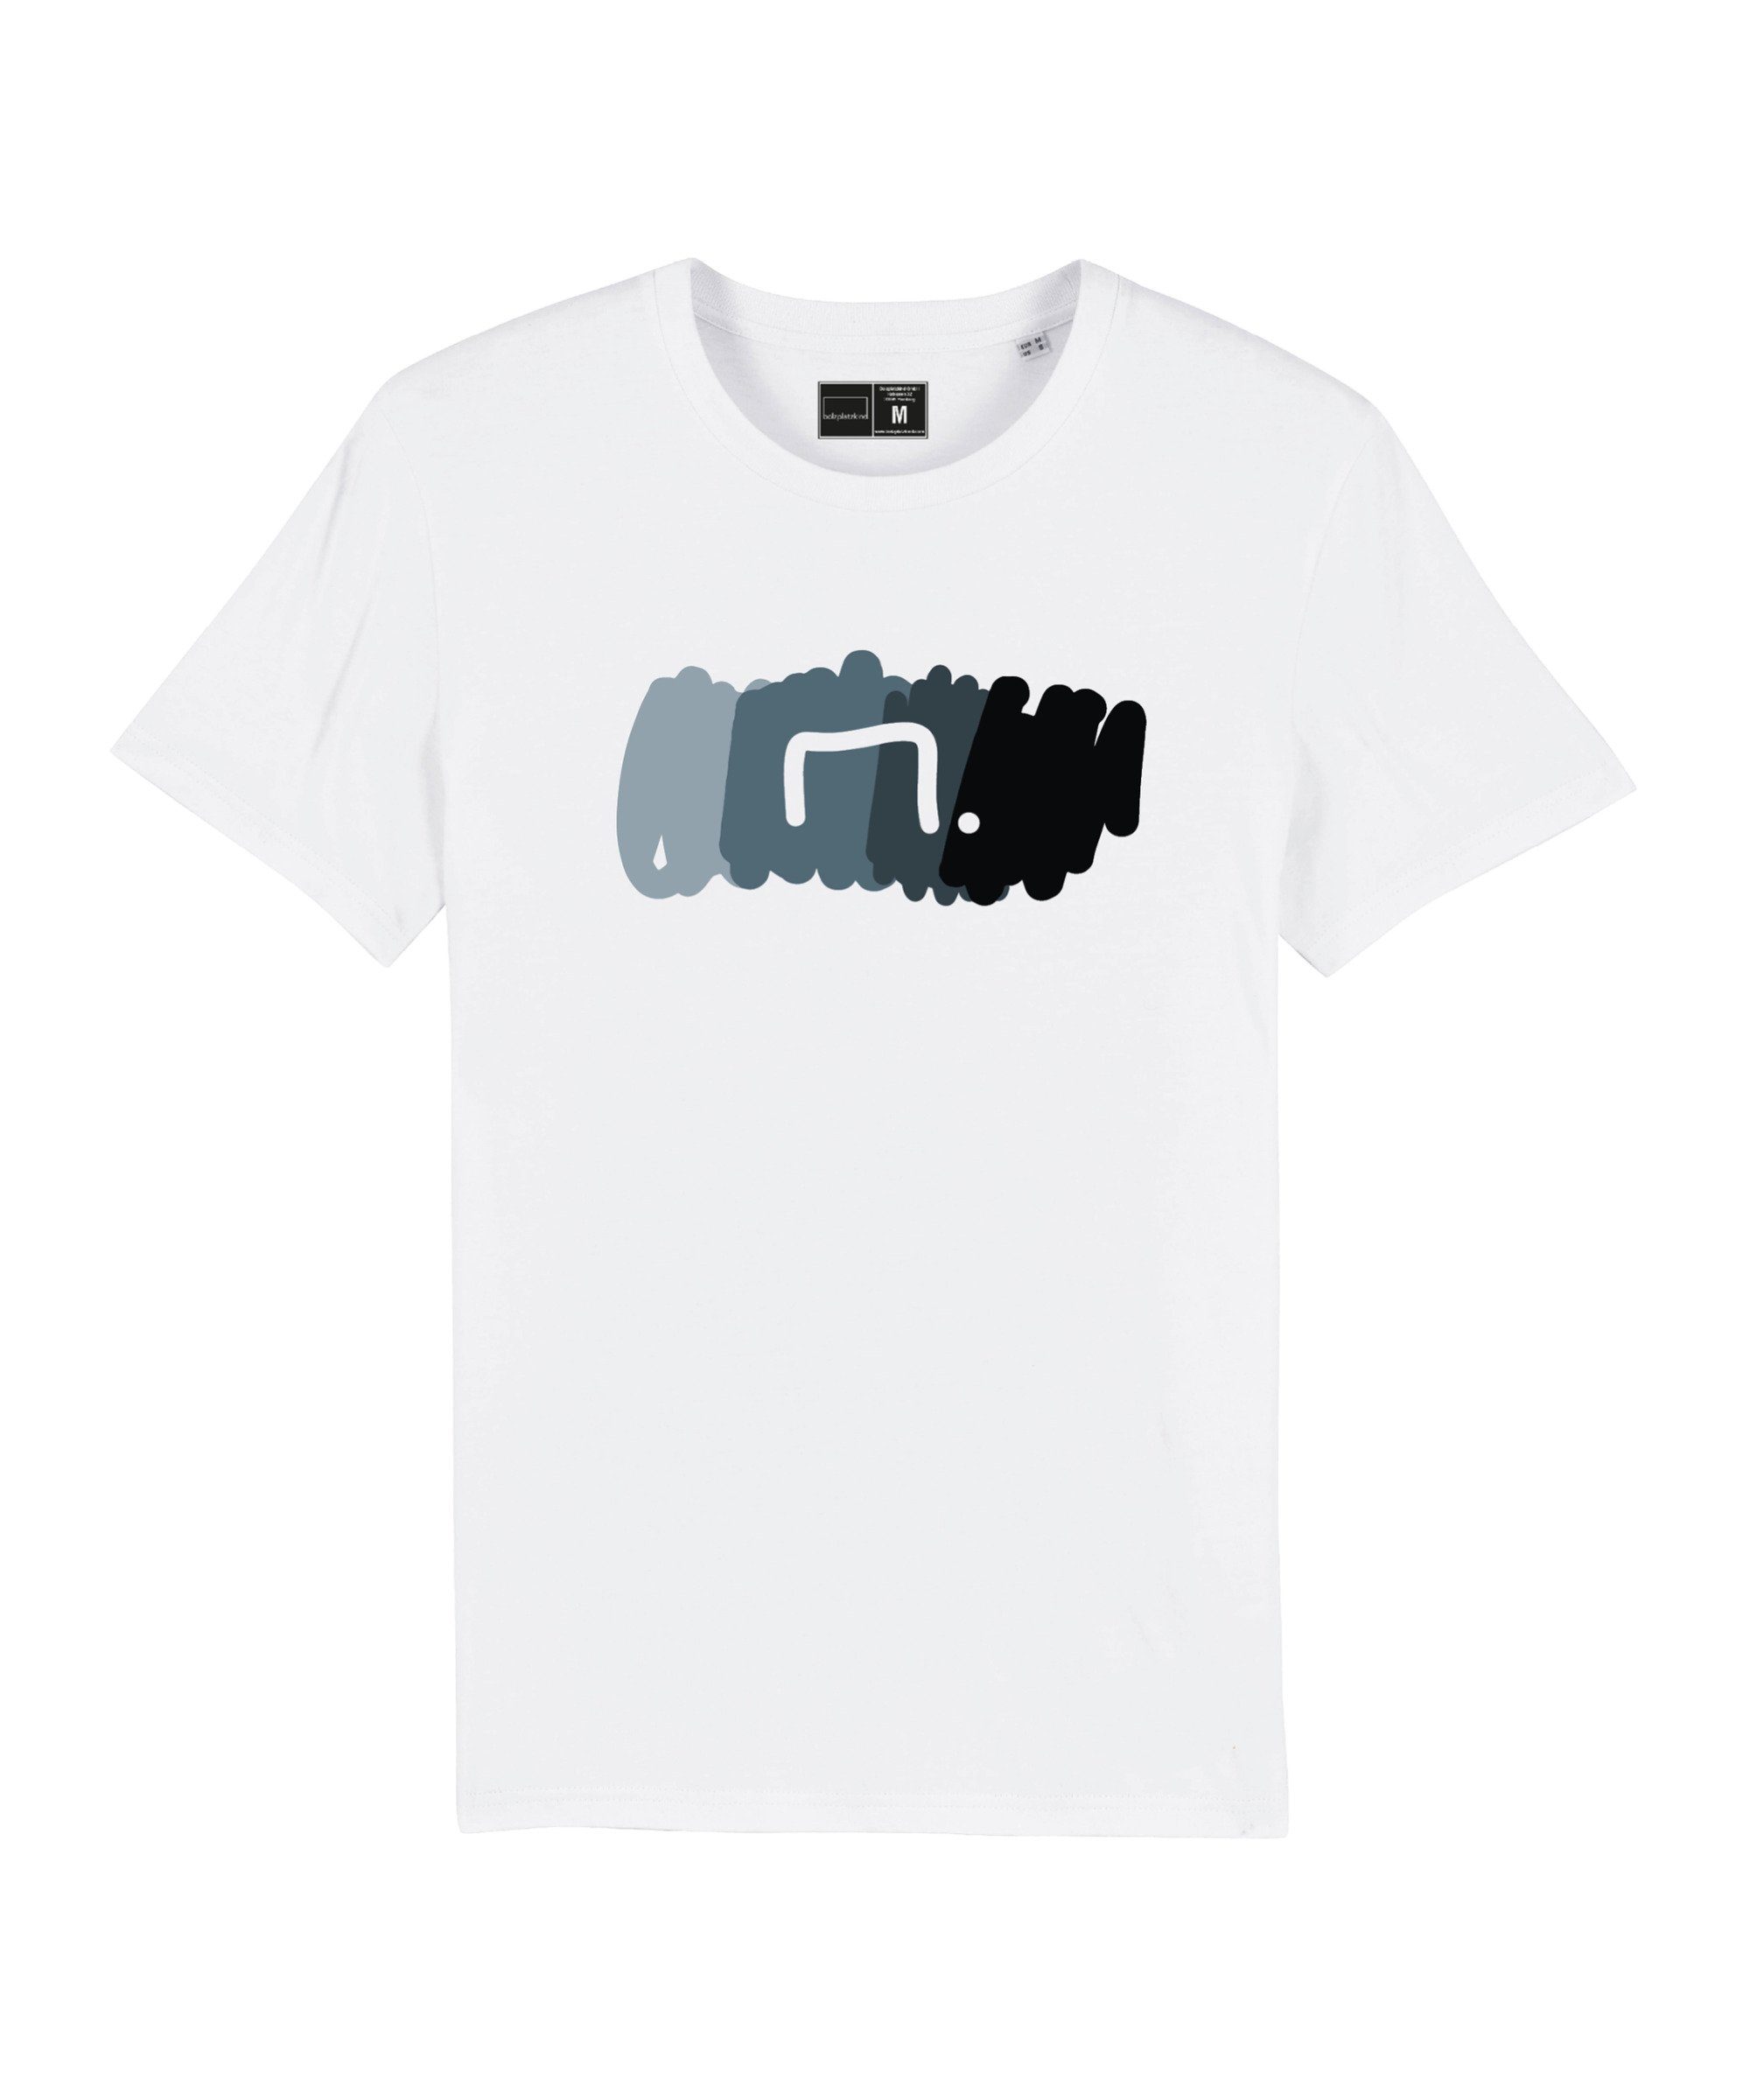 "Free" Bolzplatzkind T-Shirt Produkt Nachhaltiges T-Shirt weissgrau